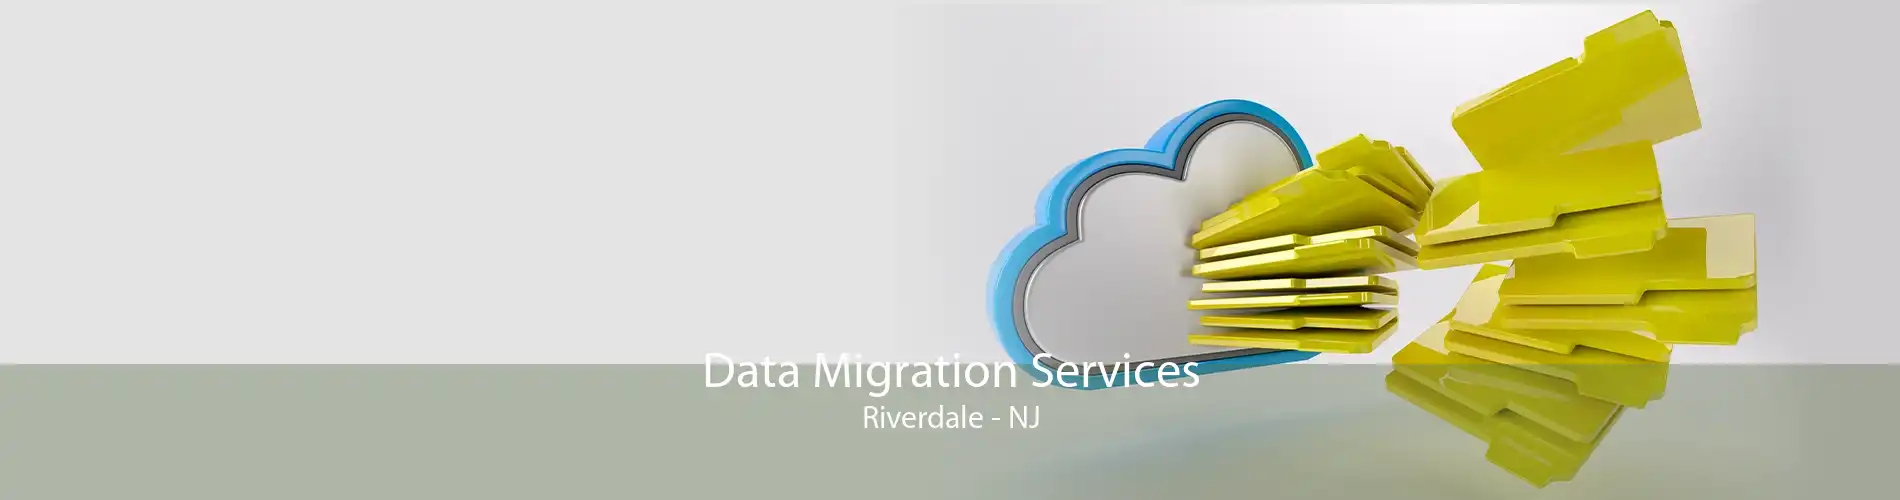 Data Migration Services Riverdale - NJ